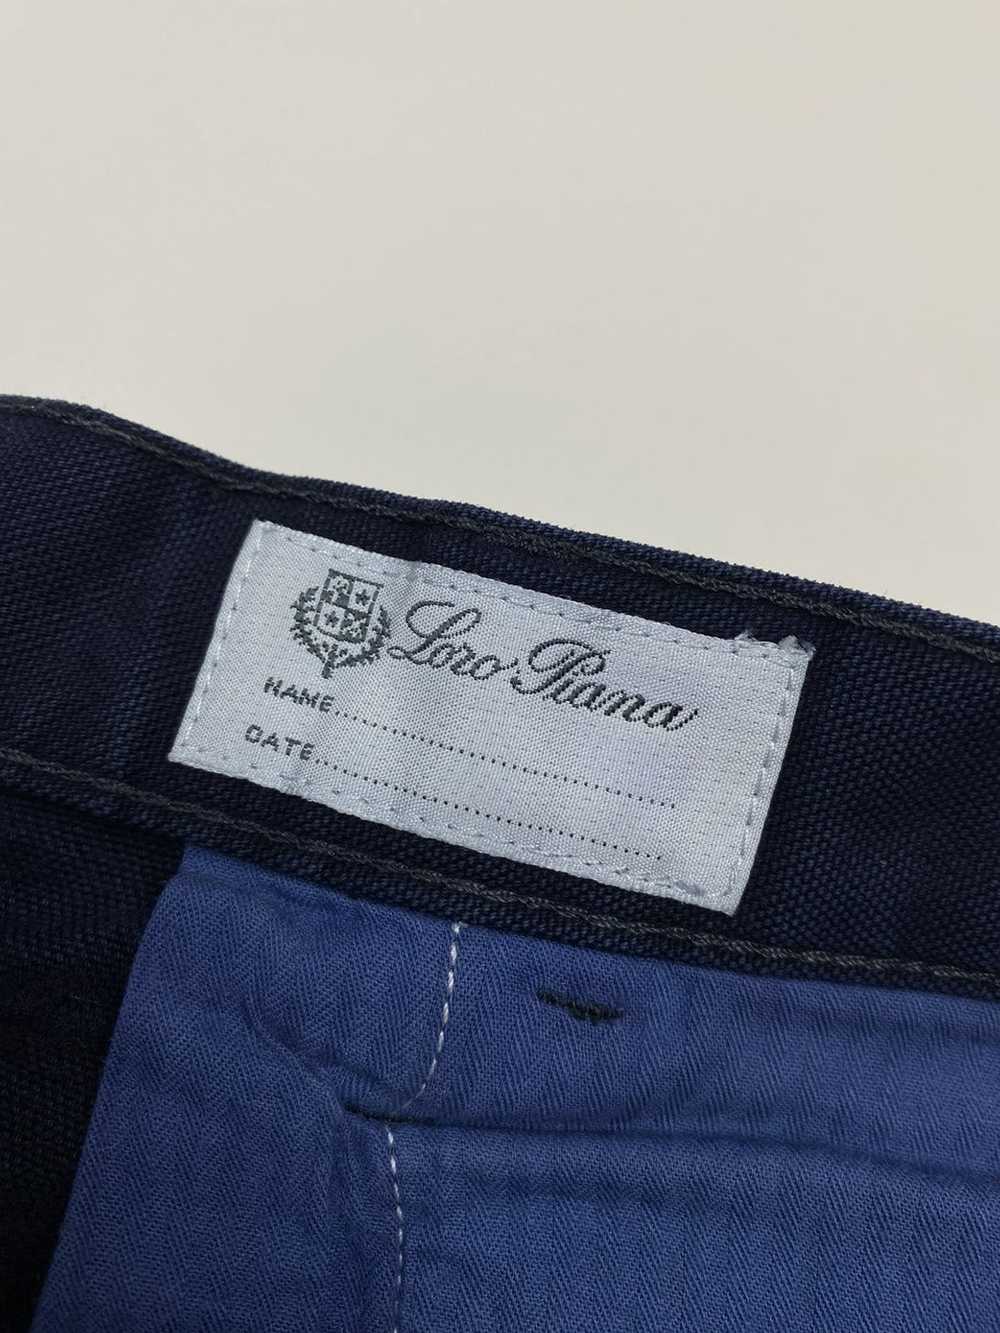 Loro Piana × Luxury Loro Piana Jeans Navy - image 11